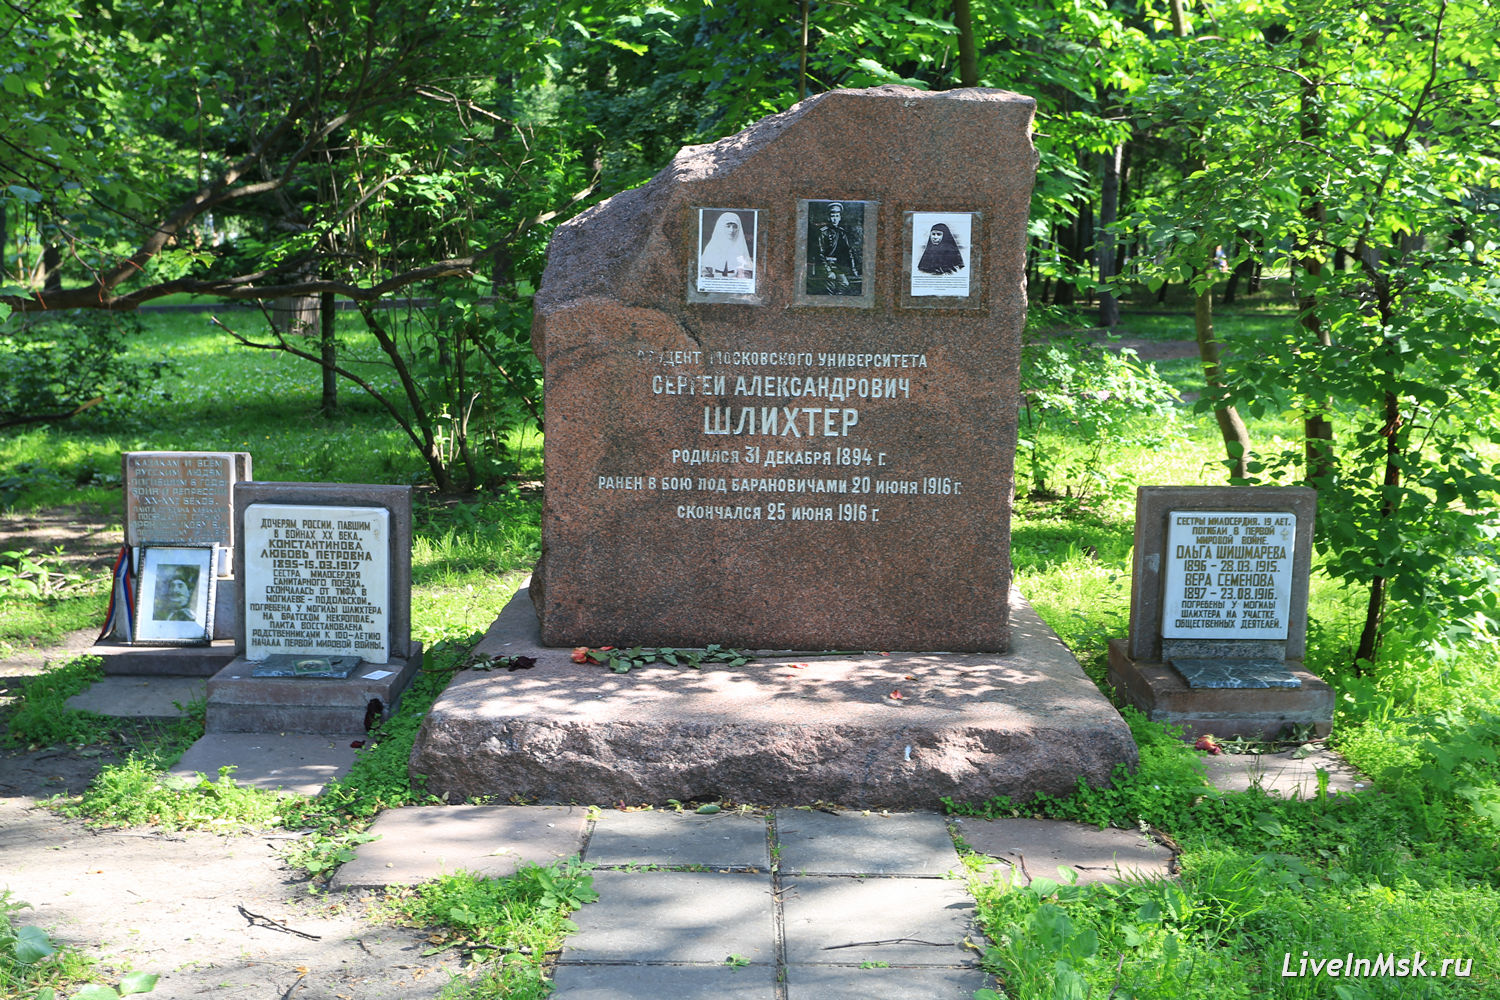 Мемориально-парковый комплекс героев Первой мировой войны